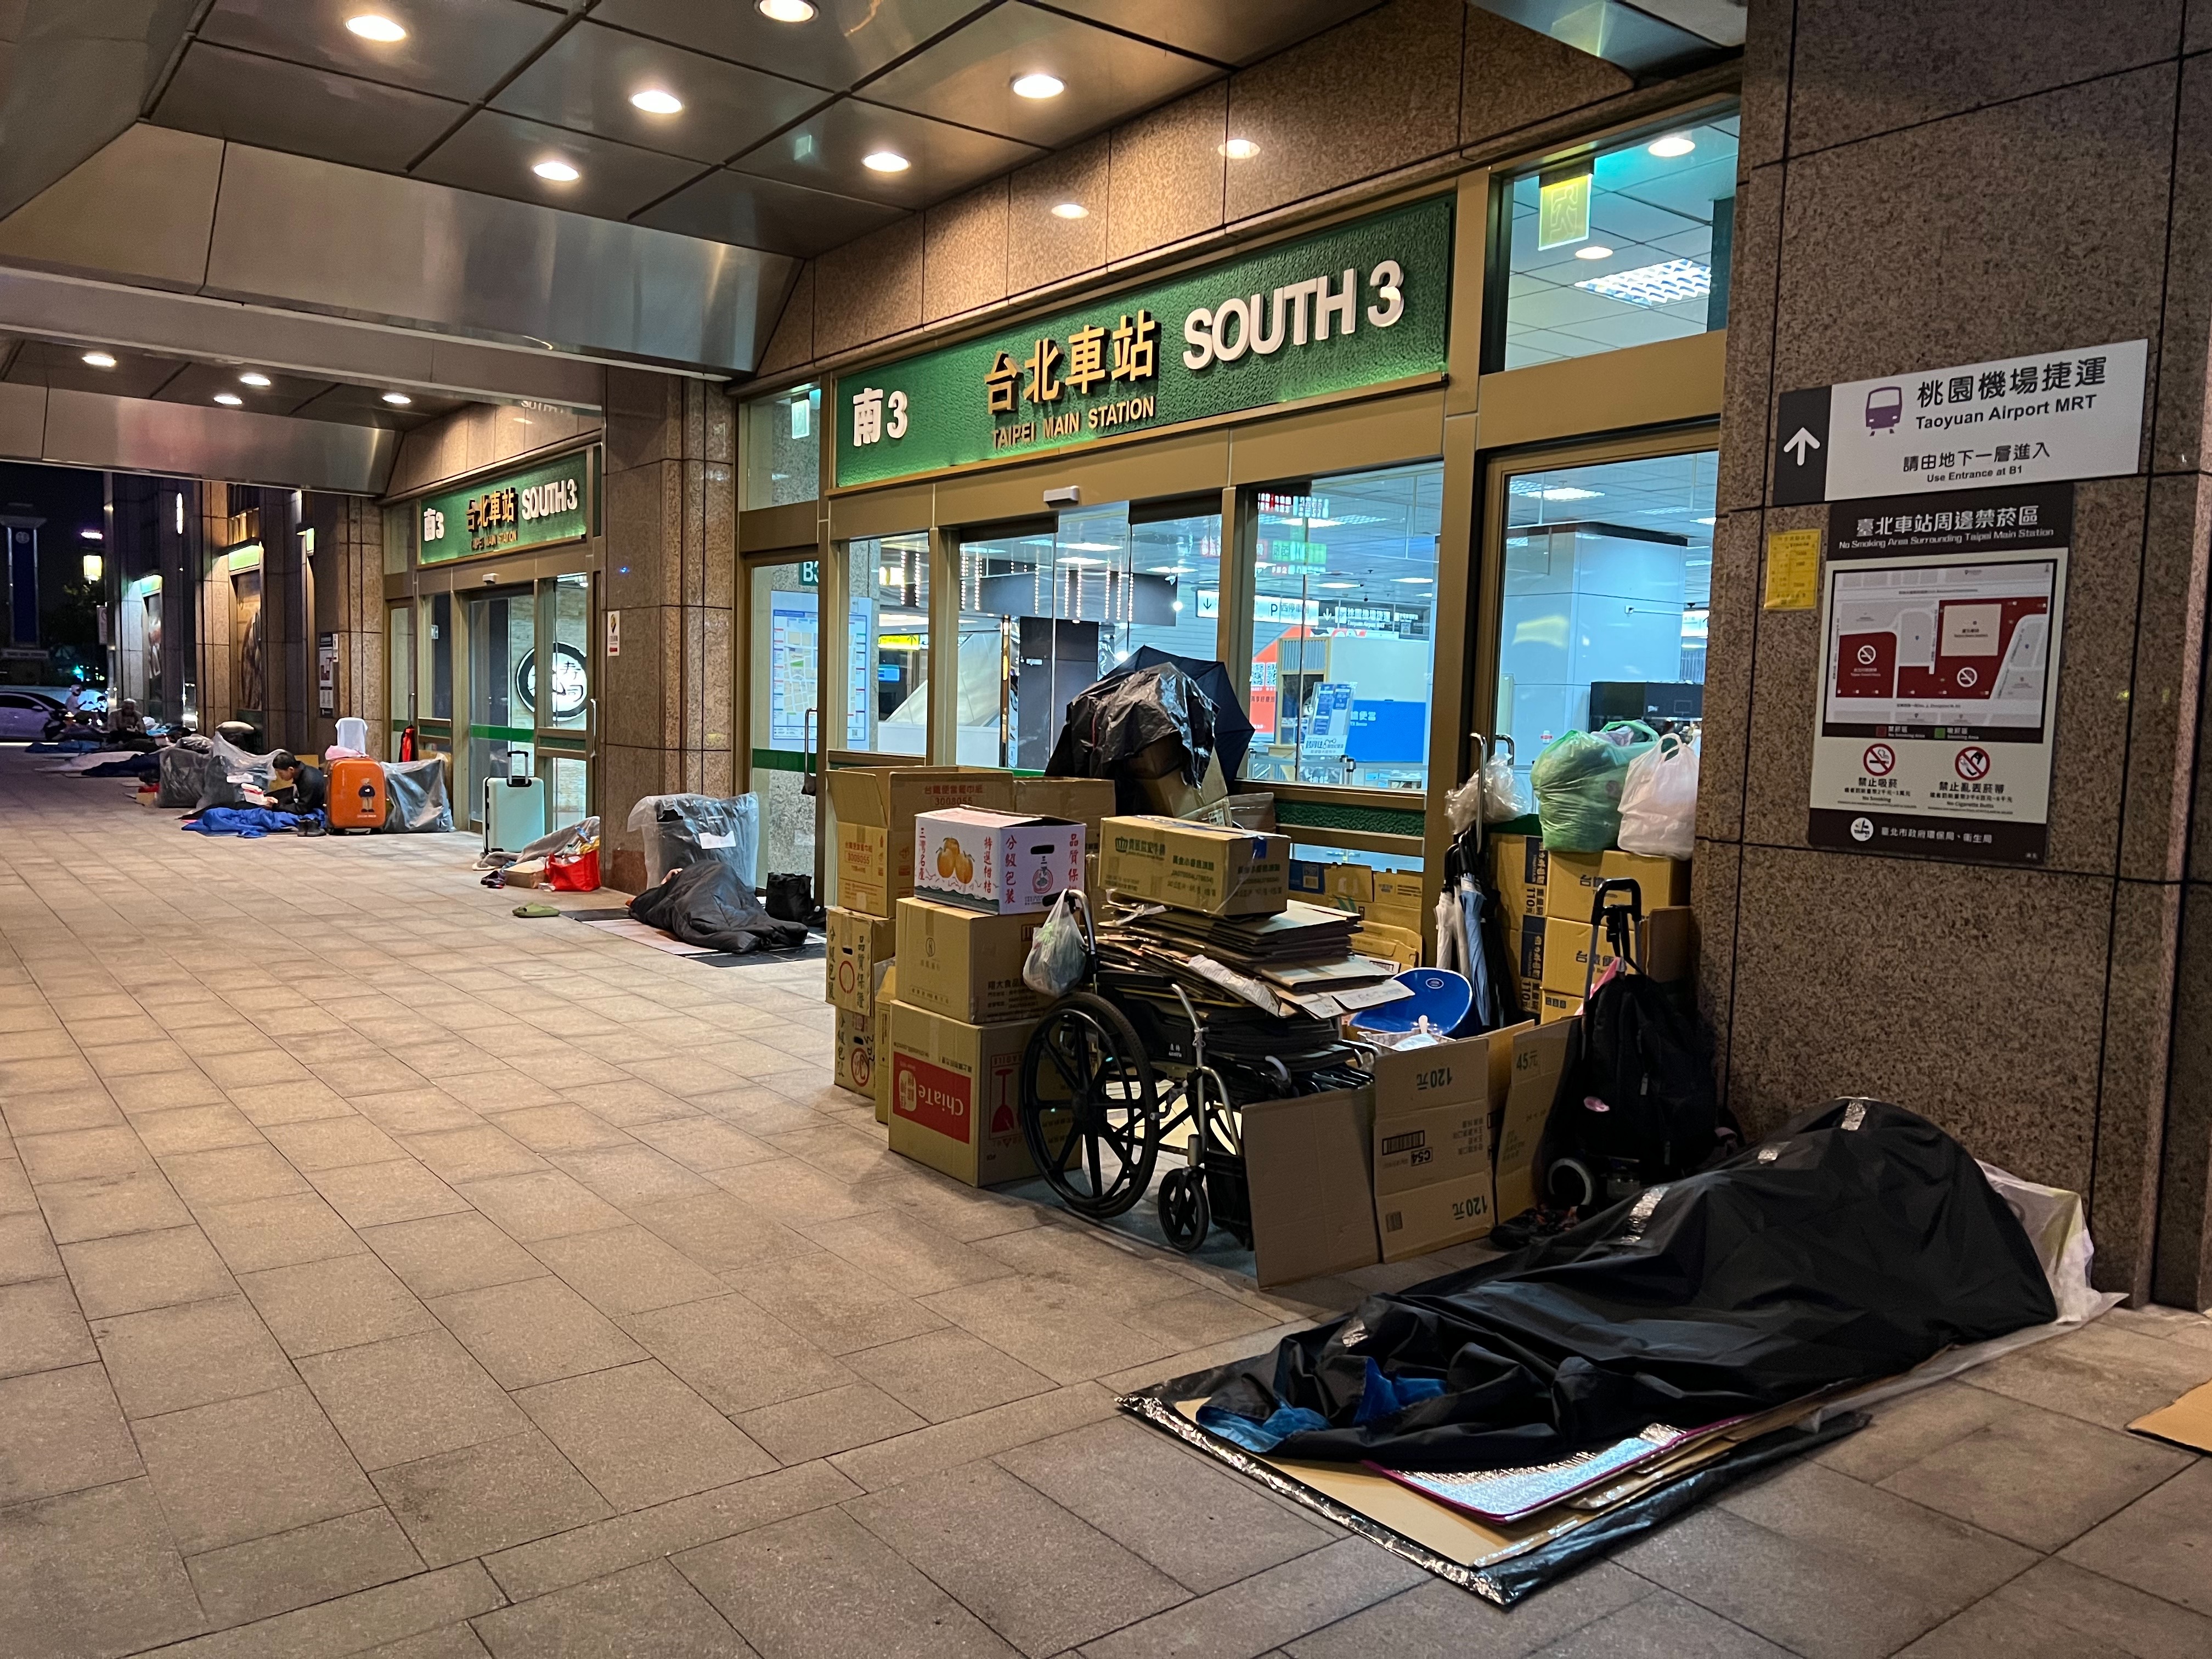 台北市社会局近年推动专用置物袋与放置区管理，台北车站上午7点至晚间7点几乎看不到杂乱行李，也无街友躺卧，此为入夜后现况。记者林佳彣／摄影